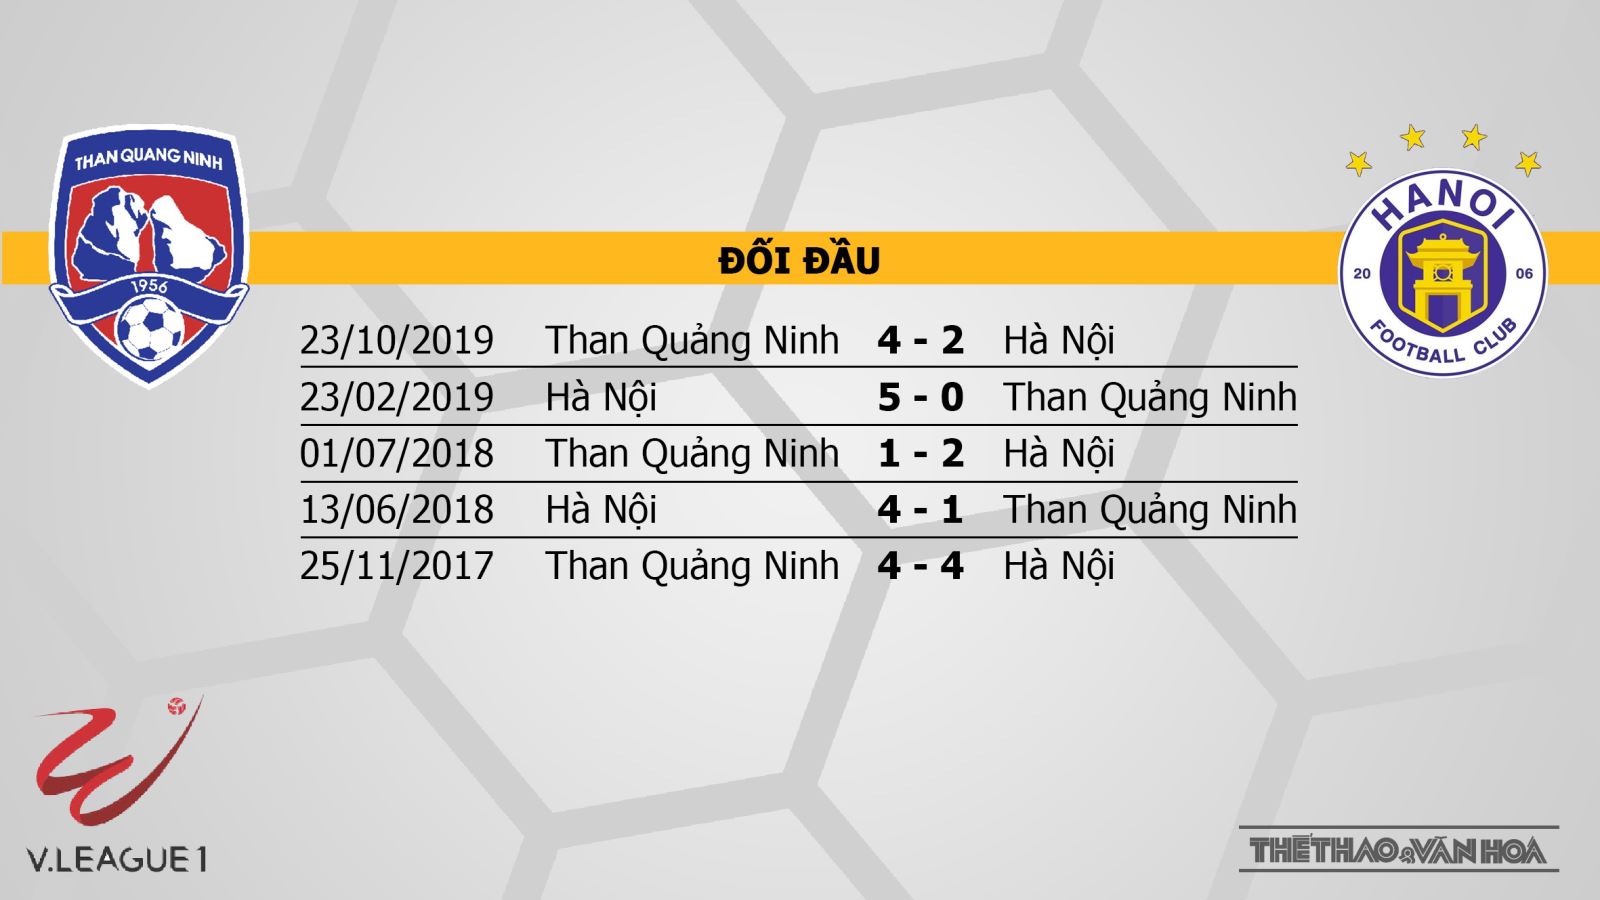 Than Quảng Ninh vs Hà Nội FC: Vòng 2 LS V-league 2020 - 18h00 ngày 15/03/2020 - Kiểm chứng sức mạnh nhà vô địch | News by Thaiger